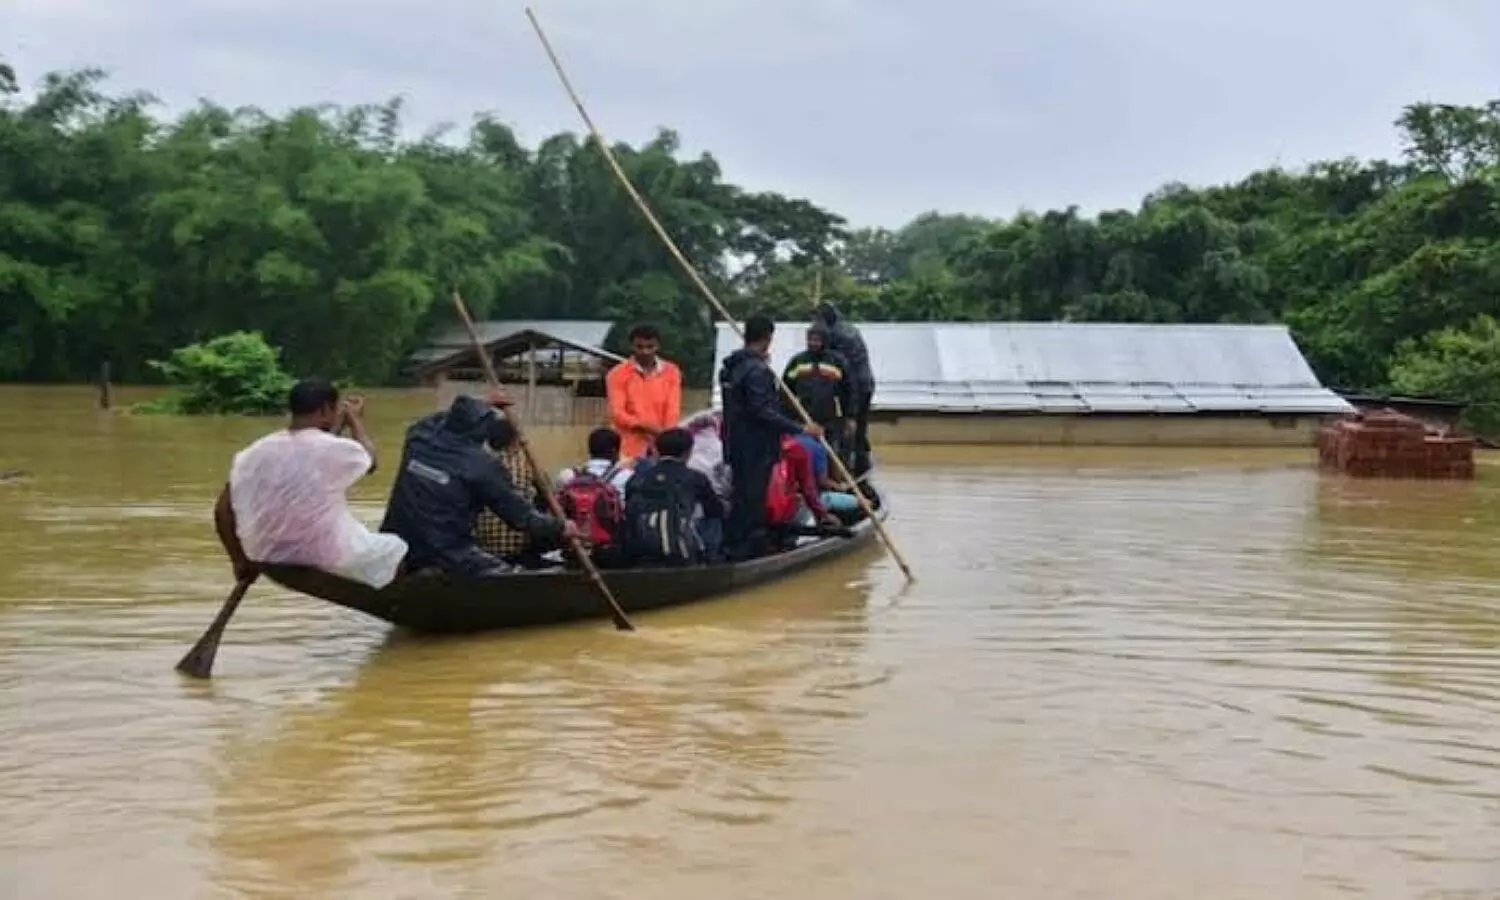 Assam Flood situation critical